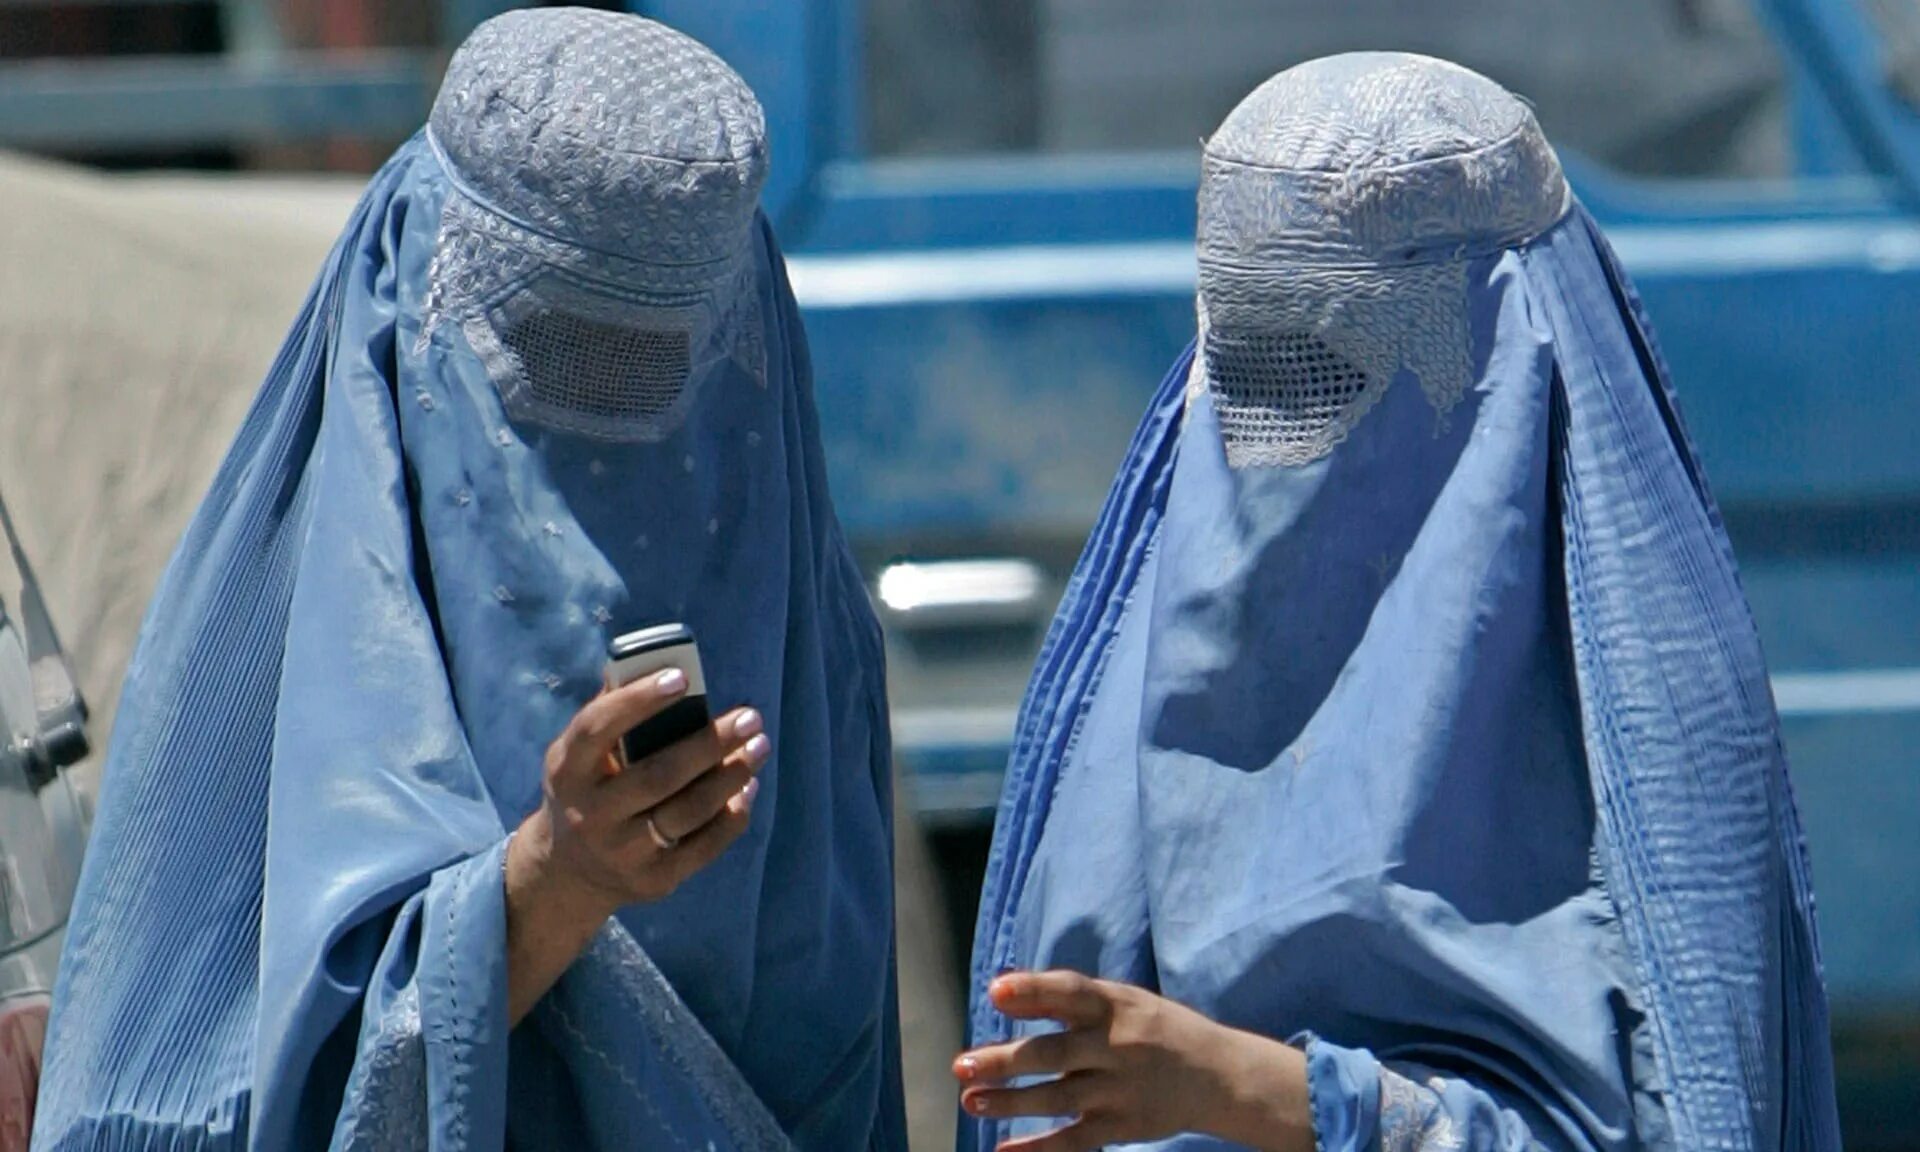 Чадра паранджа хиджаб. Бурка чадра. Паранджа бурка Афганистан. Бухара паранджа.